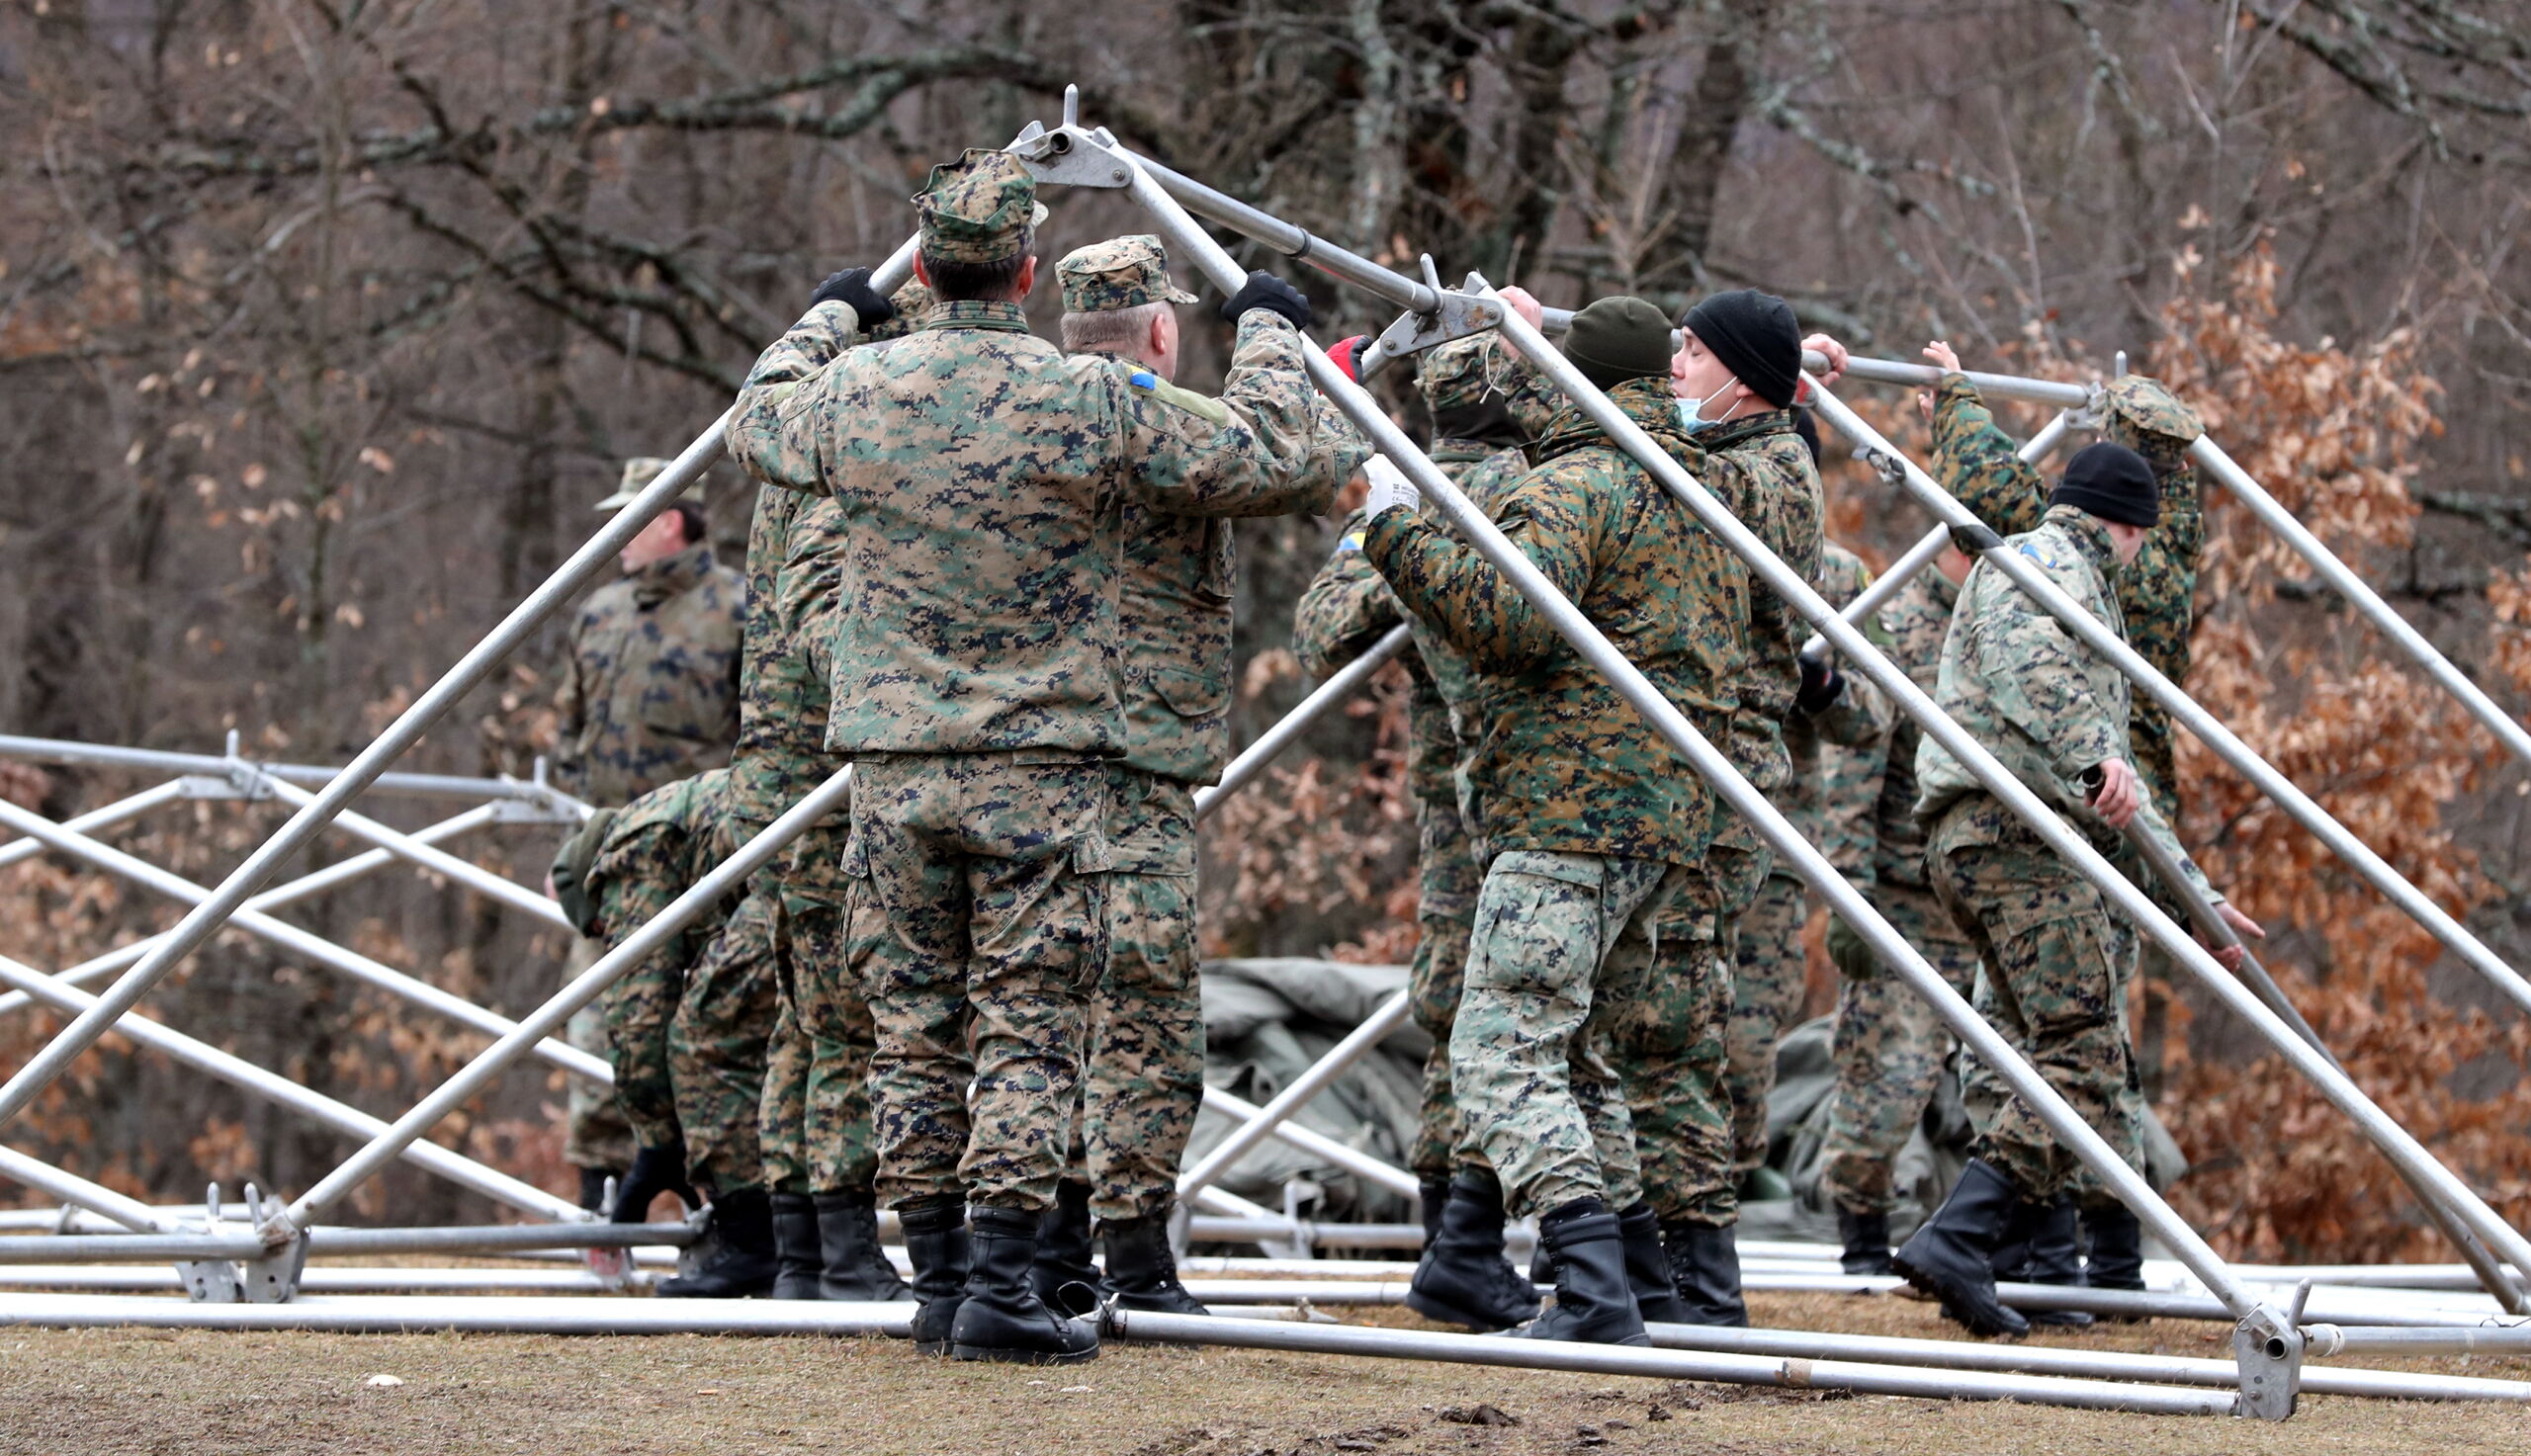 Bosnische soldaten bouwen op nieuwjaarsdag nieuwe opvangtenten in kamp Lipa. EPA/FEHIM DEMIR